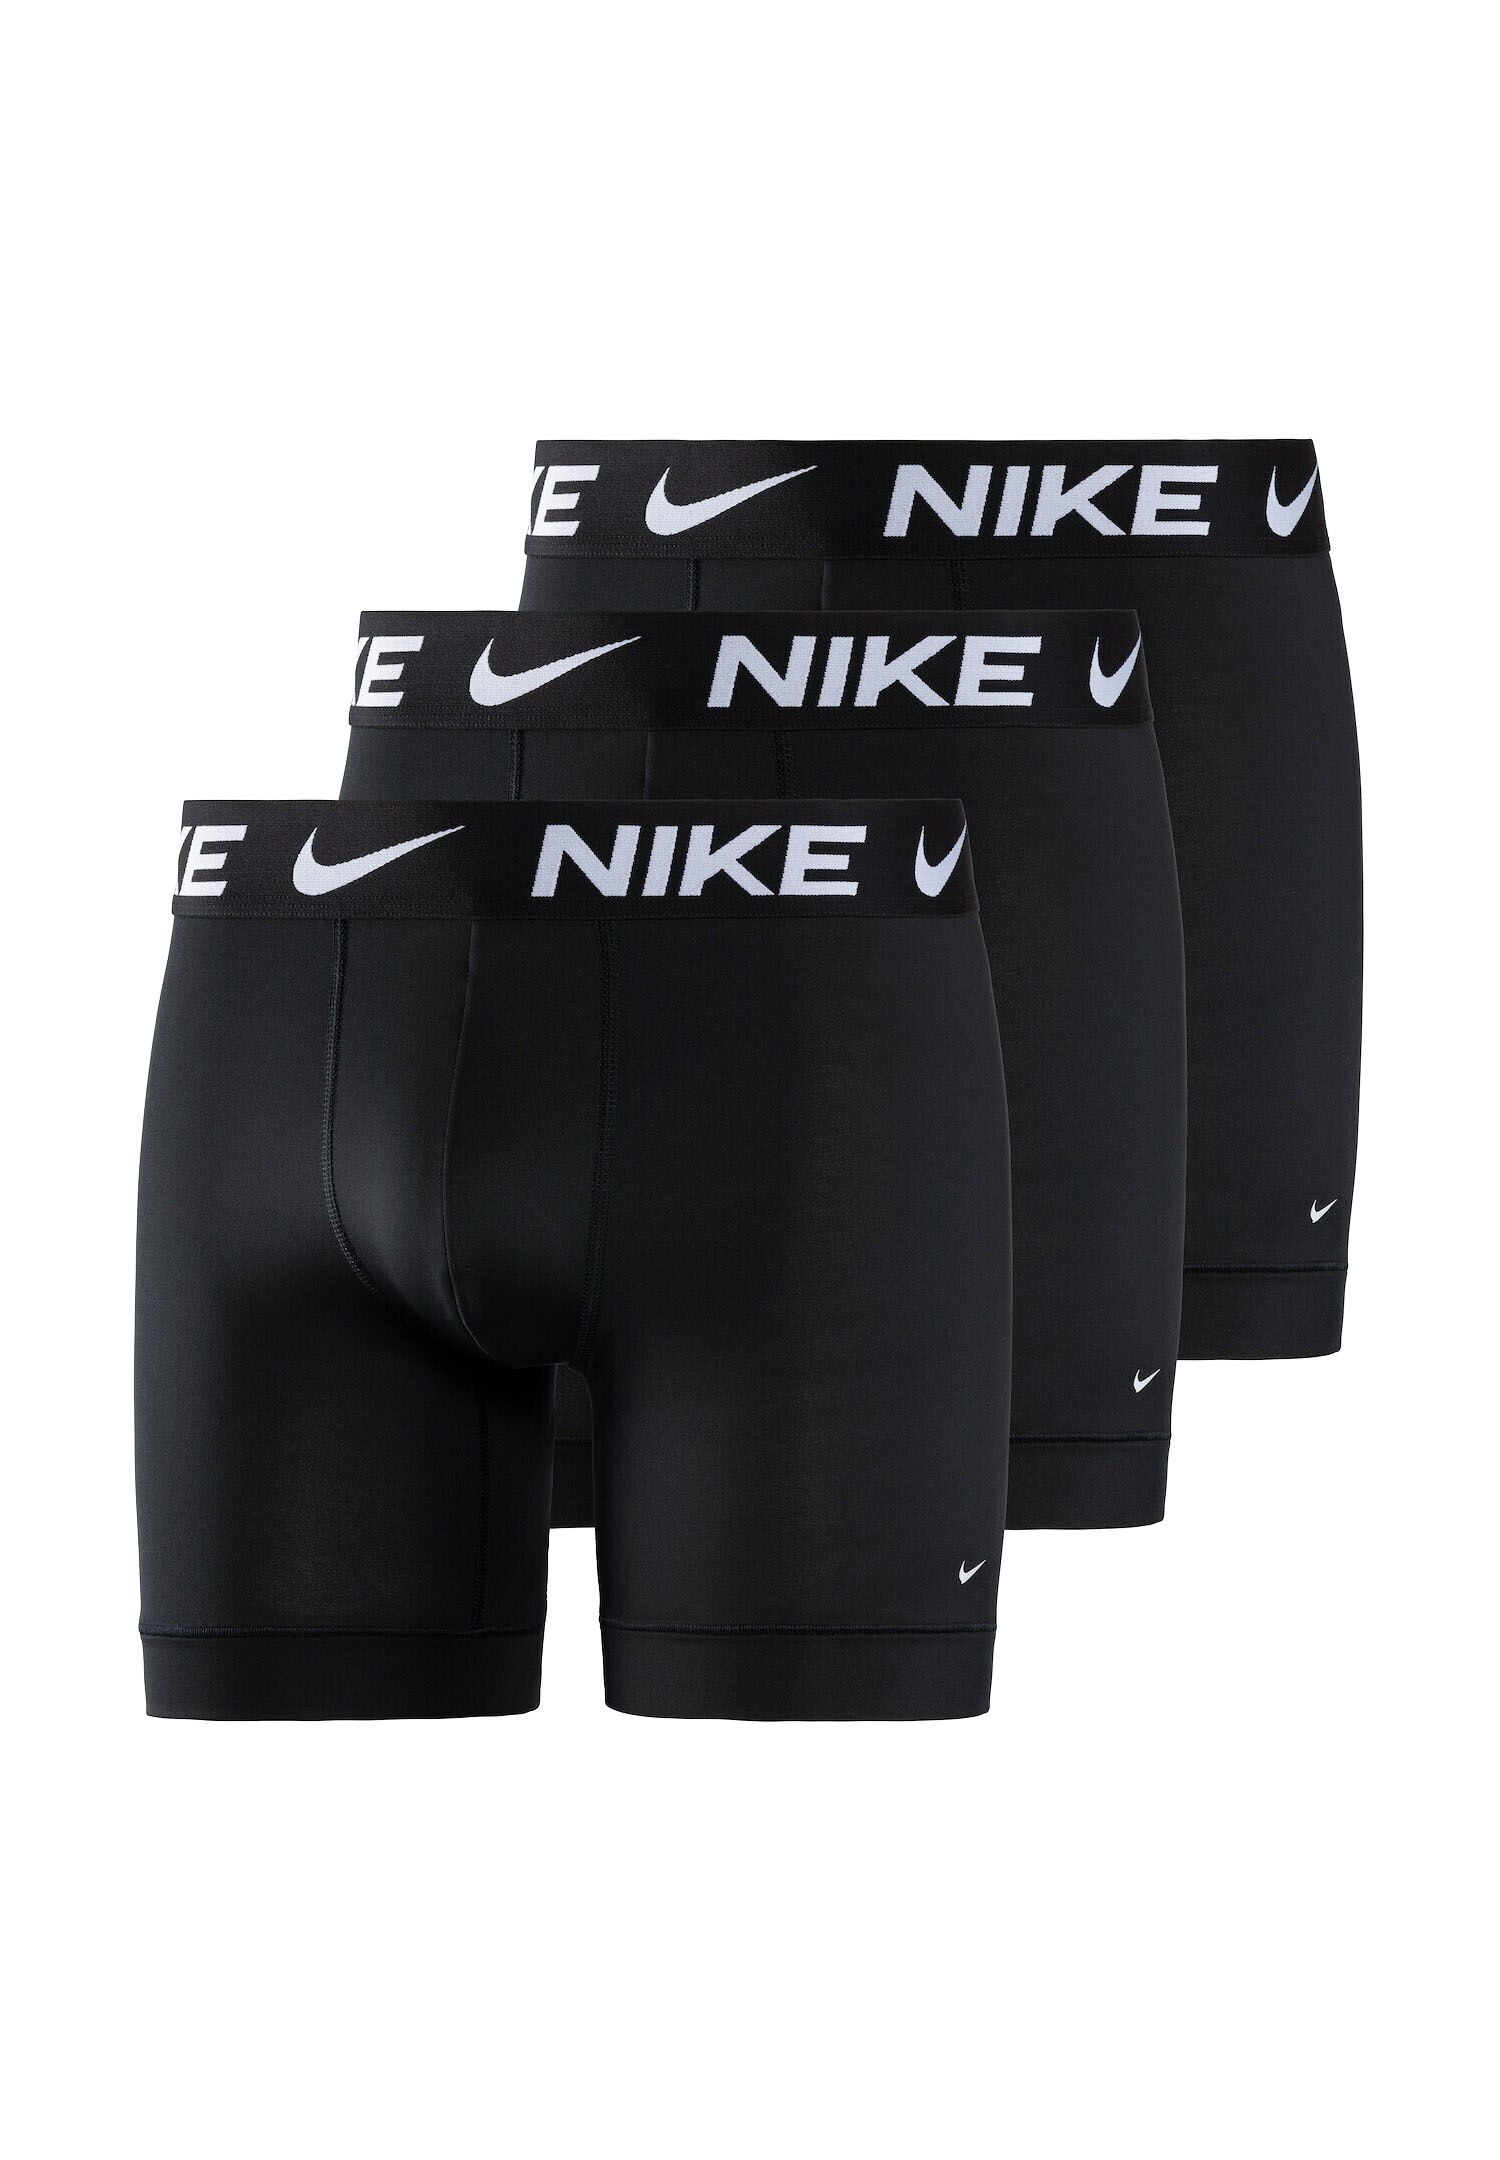 3er Pack Herren Nike Essential Micro Boxer Brief Boxershorts Unterwäsche Pants schwarz